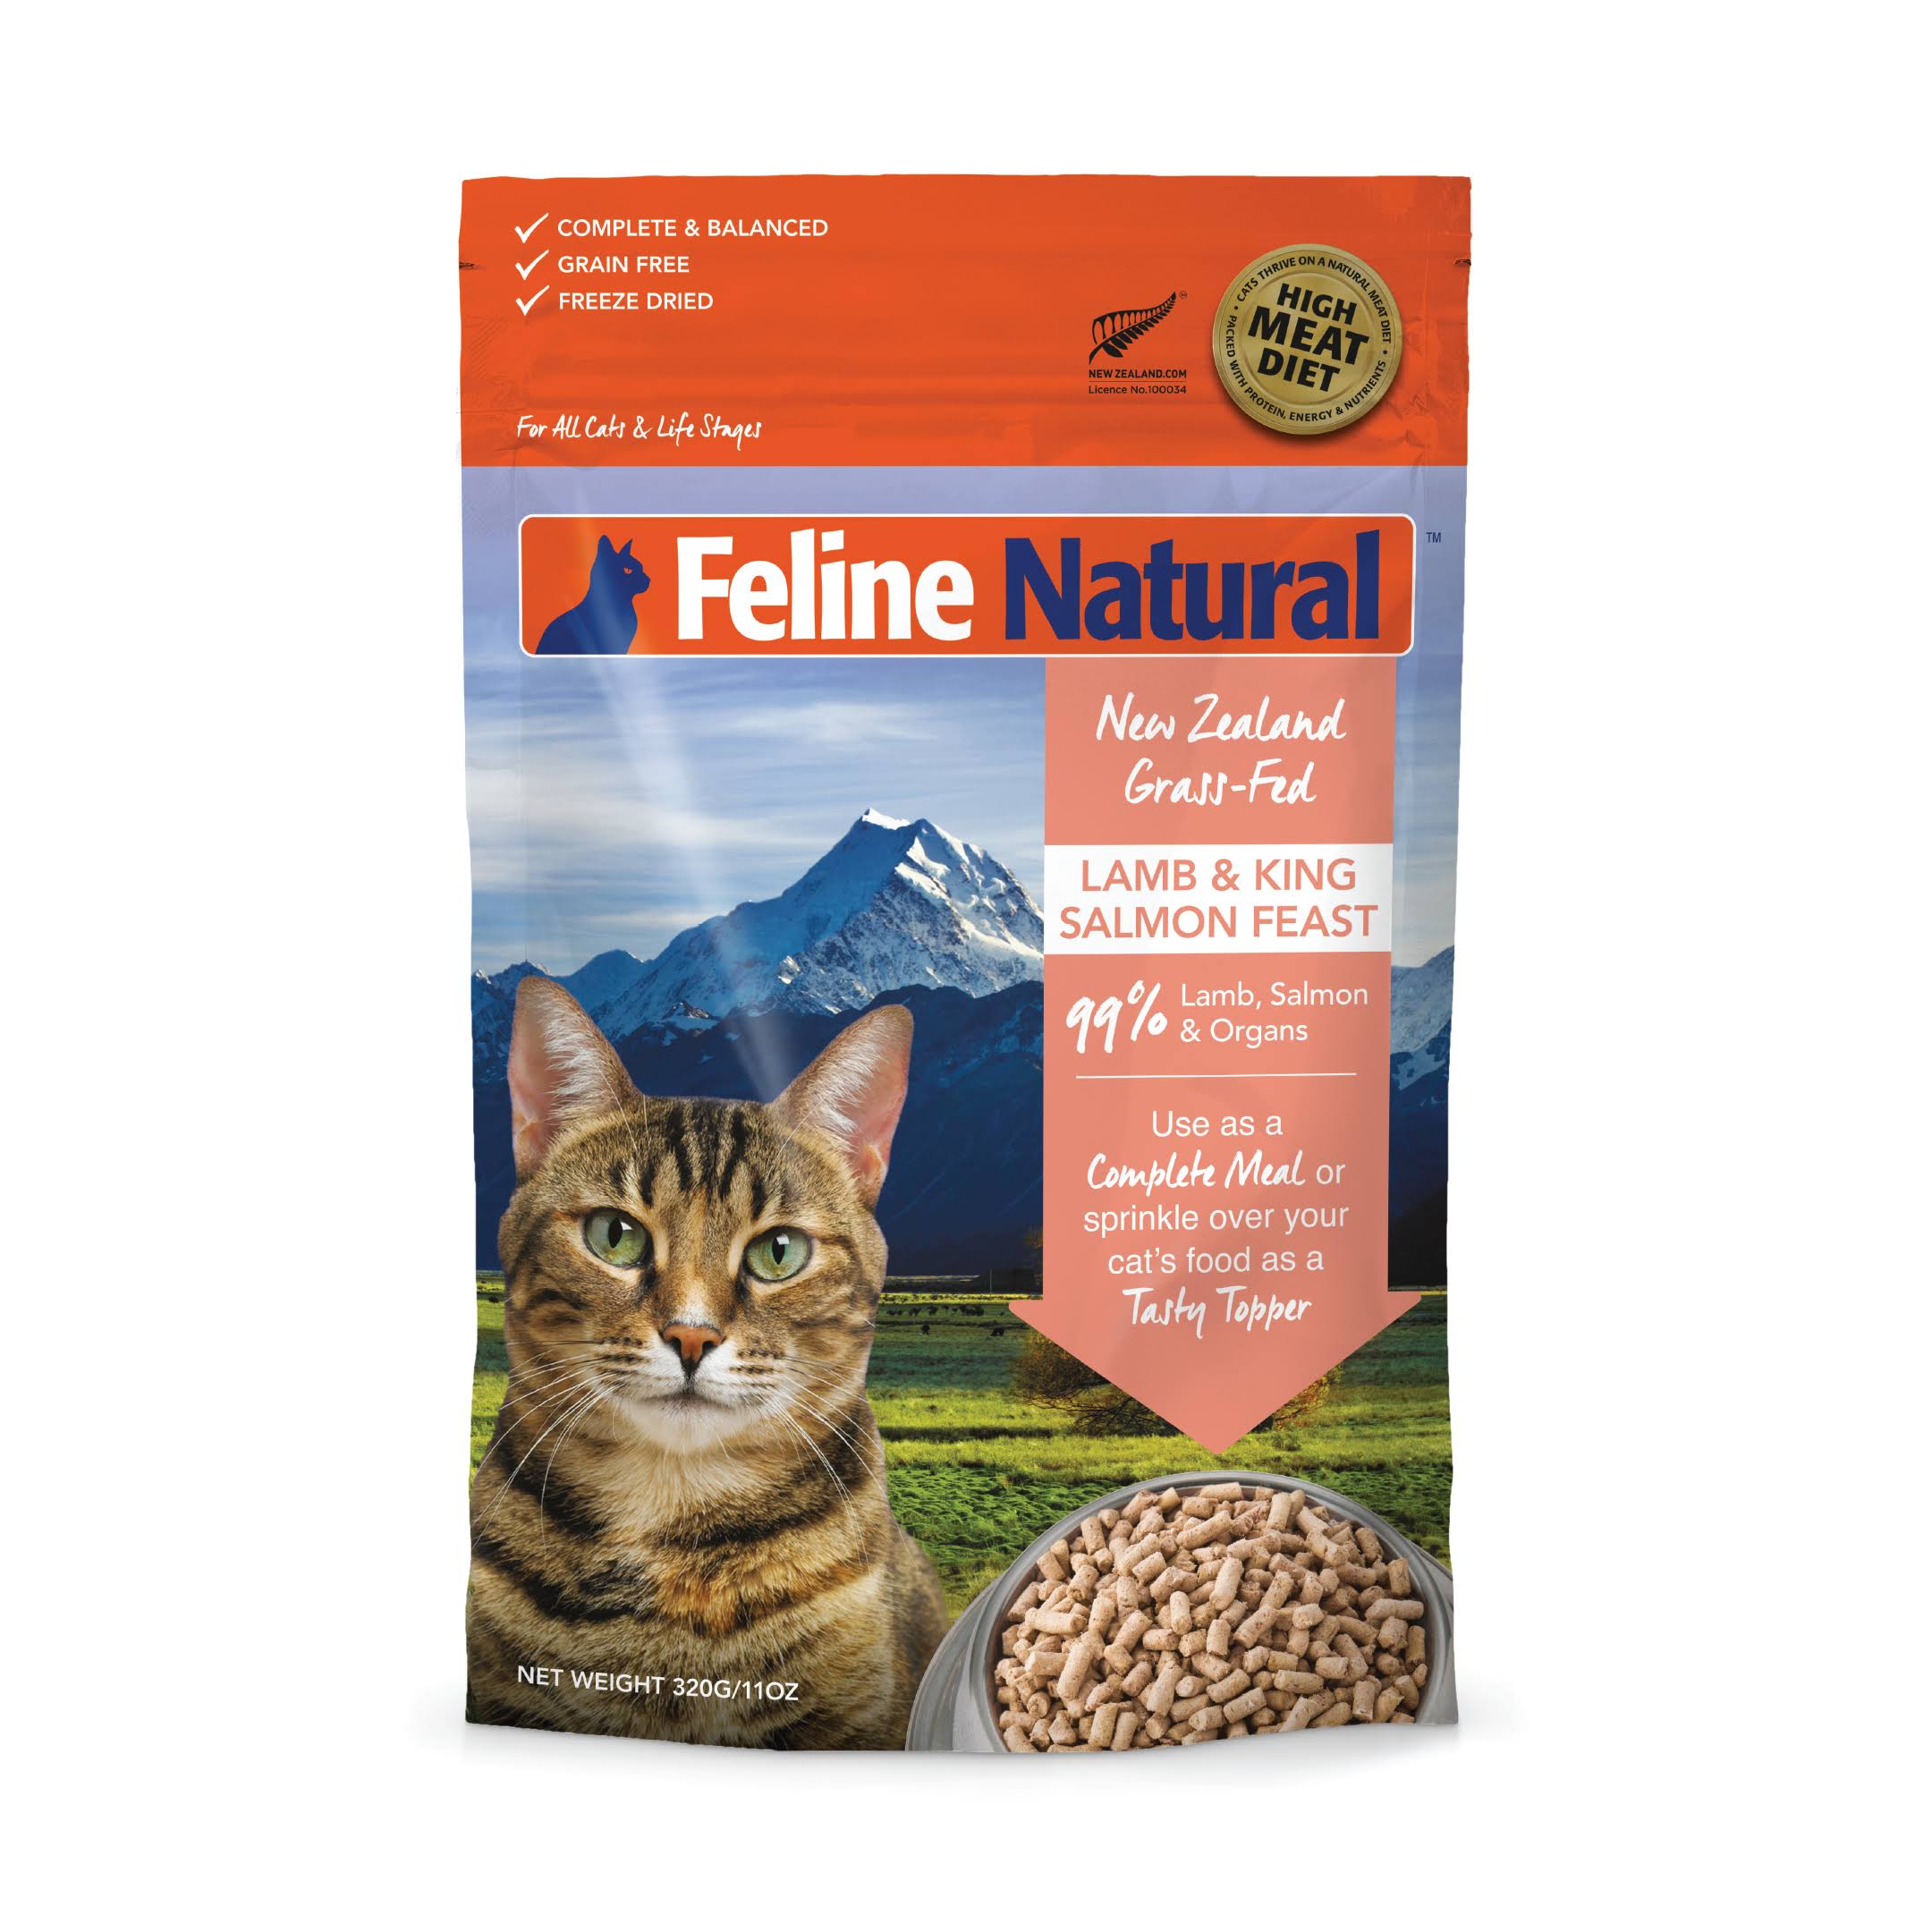 Feline Natural Grain Free Cat Food - Lamb and Salmon, 320g